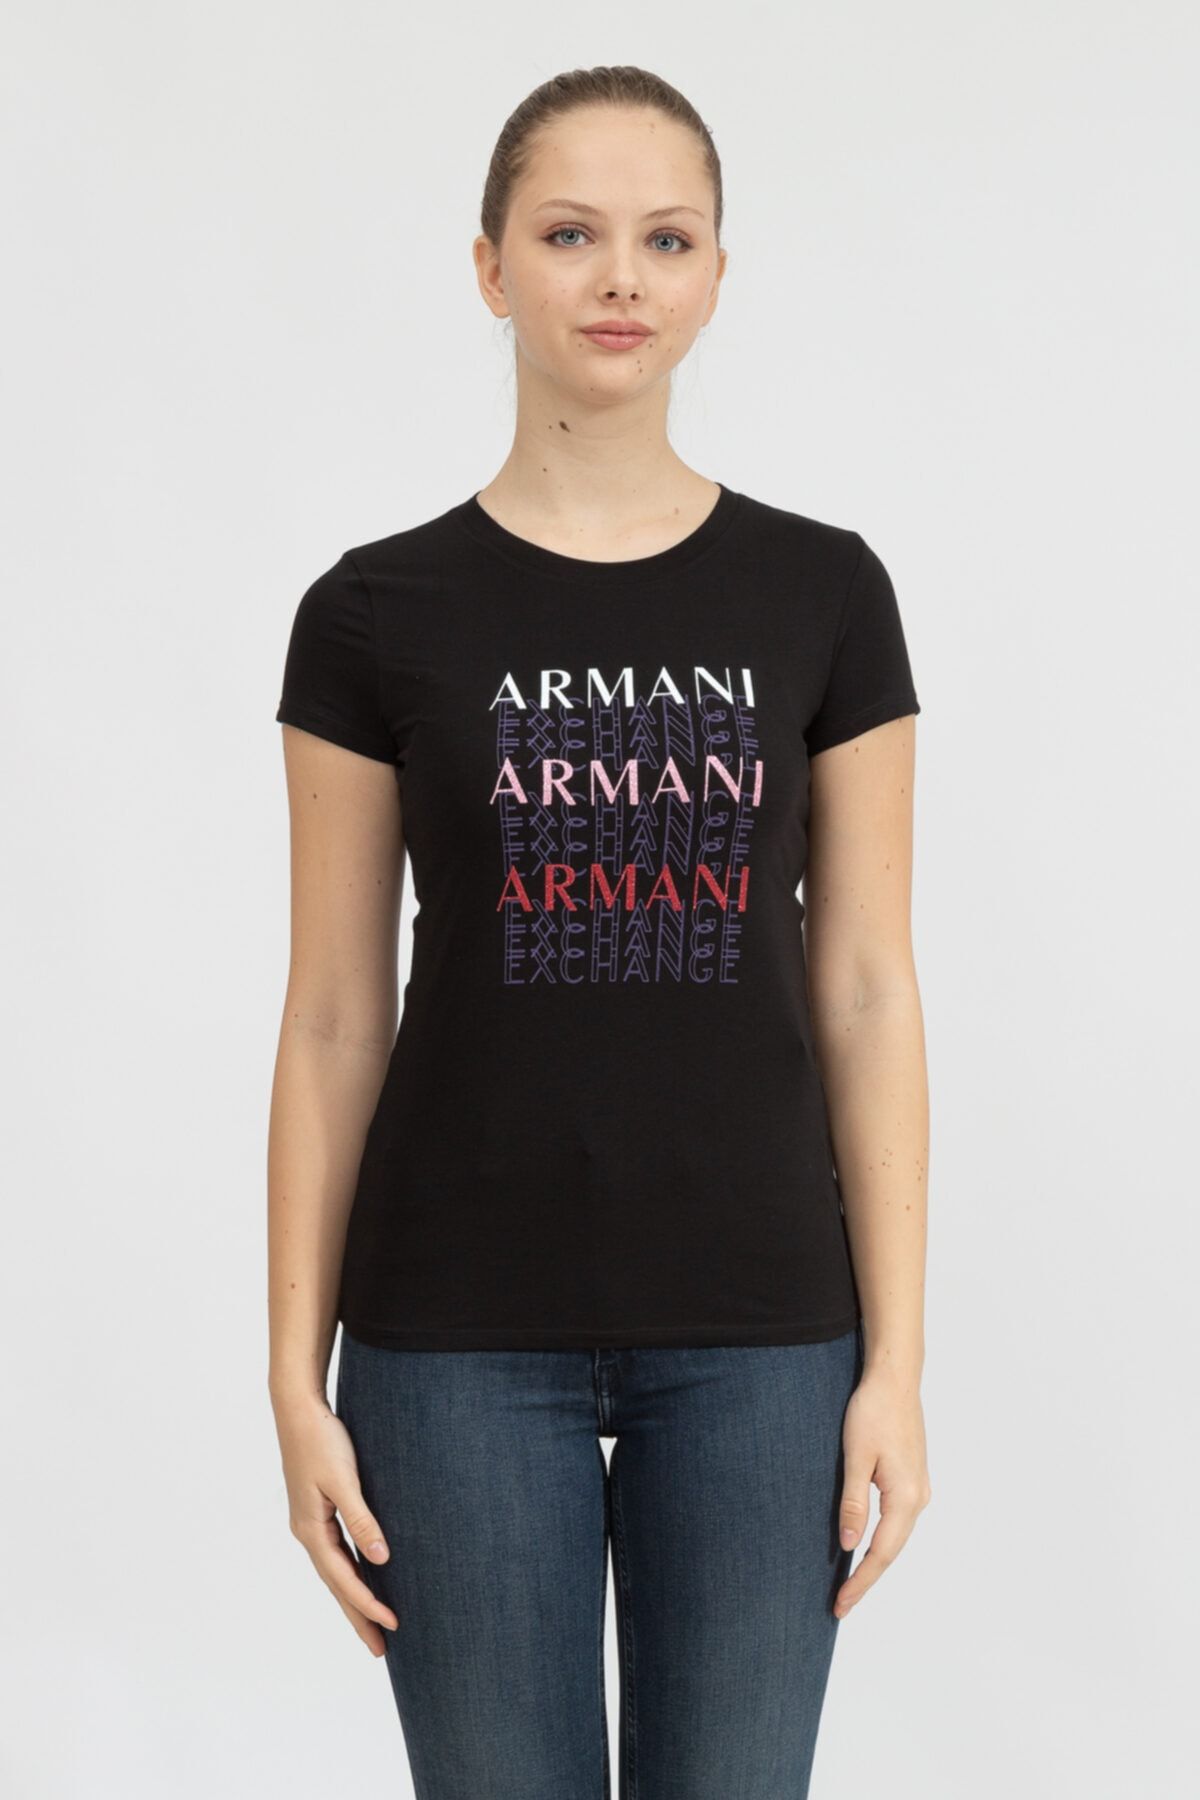 Armani Exchange Kadın Bisiklet Yaka T-shirt6hytamyj7gz